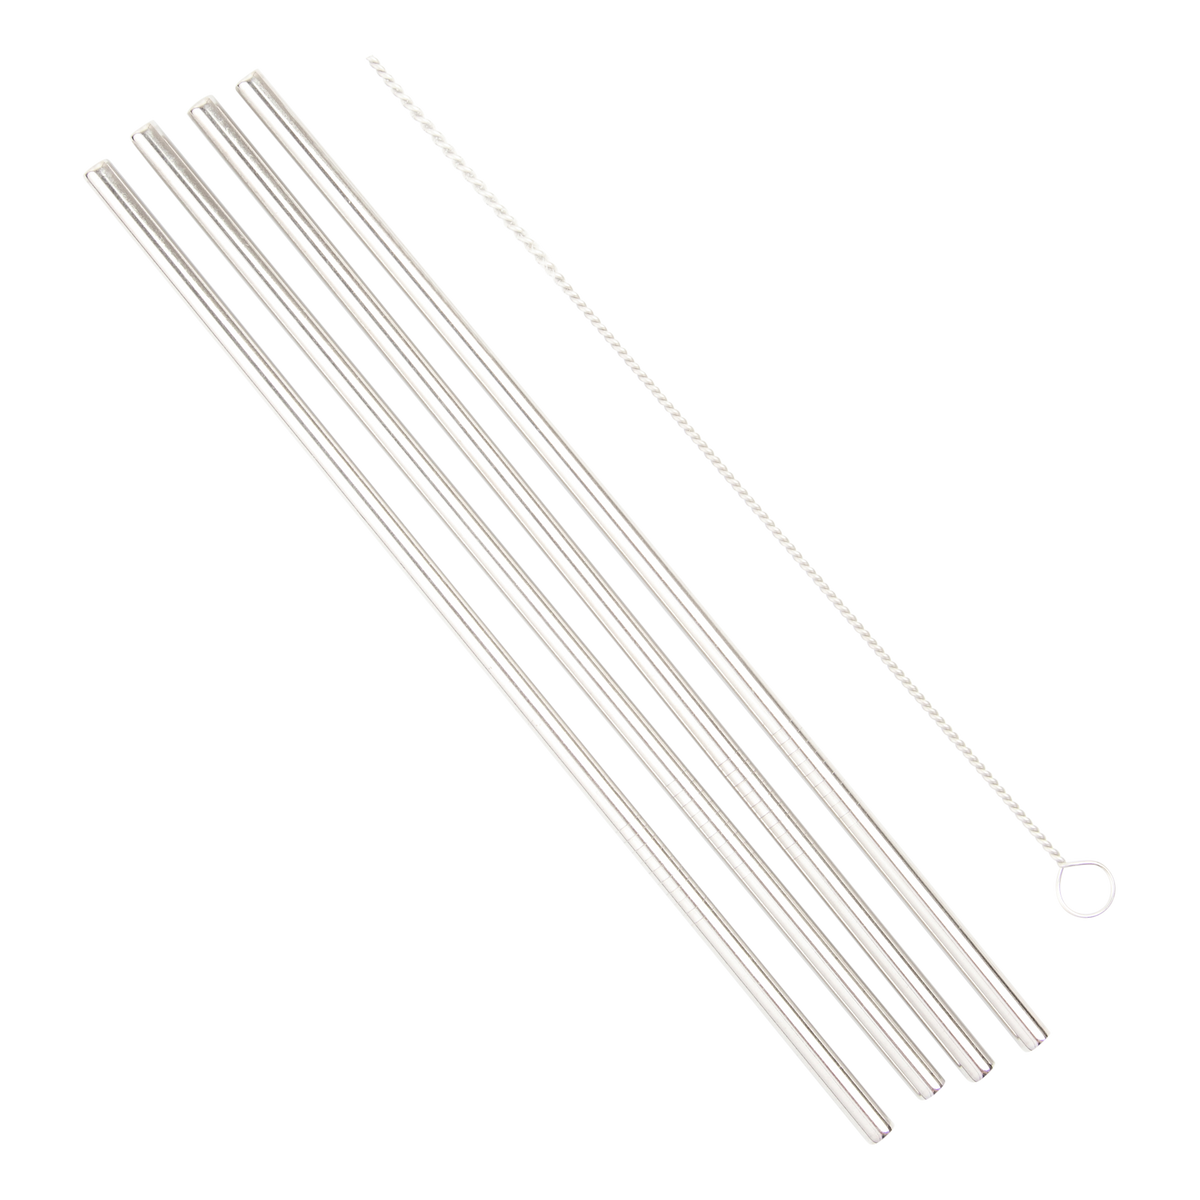 Egmont's Garden metal straw metalen rietjes 4 stuks 4 straws accessories accessoires 